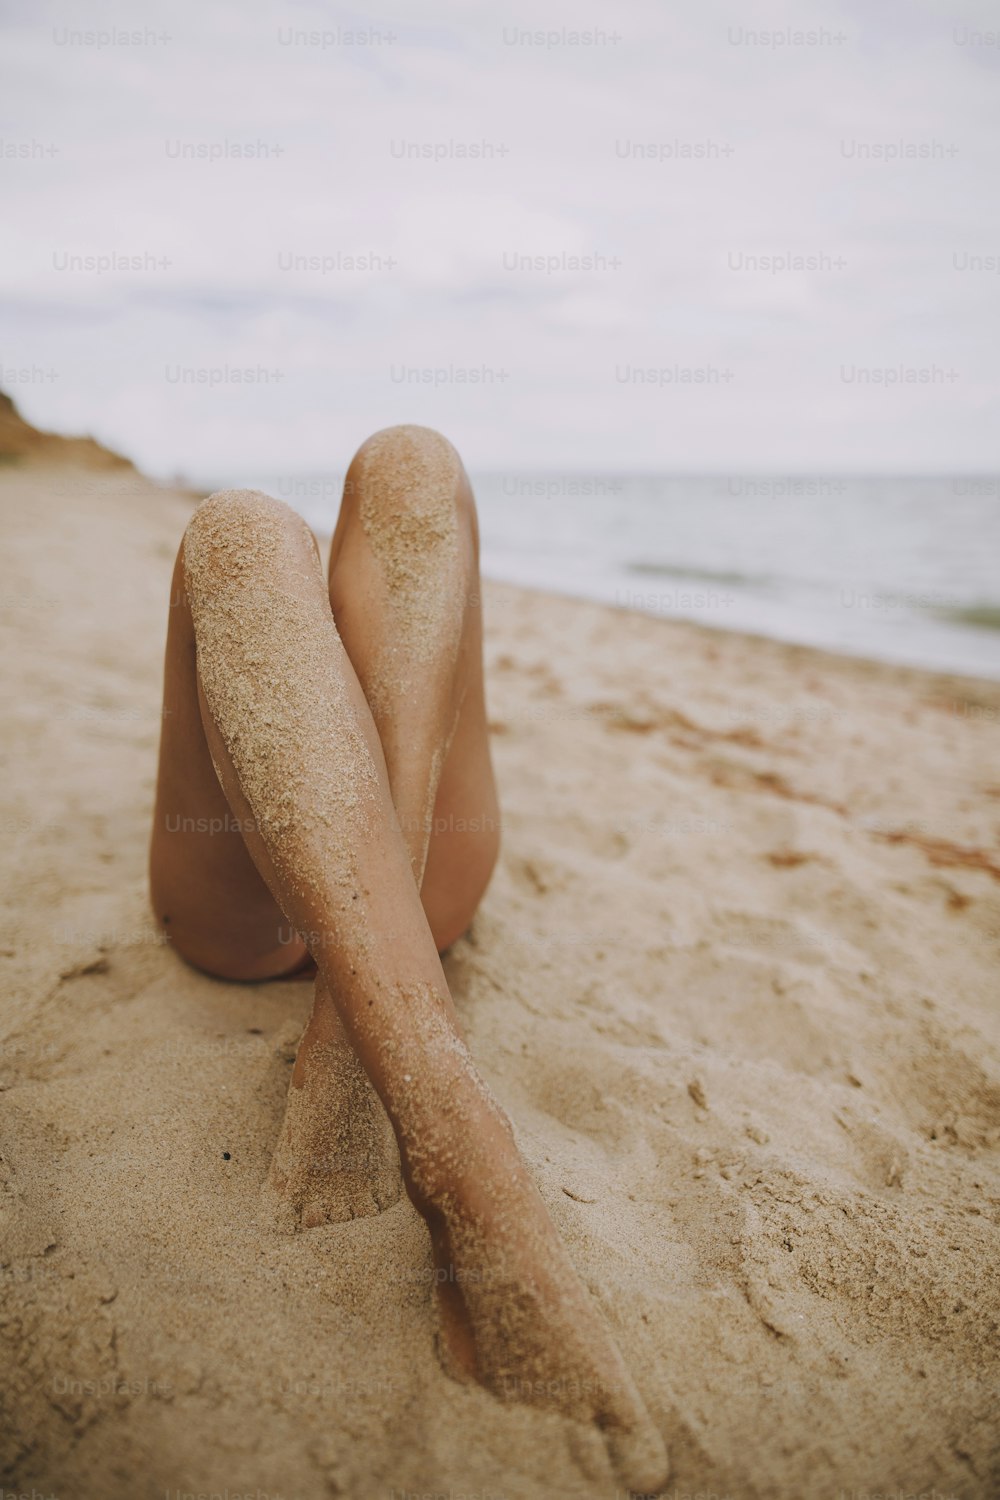 Gambe abbronzate femminili con sabbia su pelle liscia primo piano sulla spiaggia. Bella immagine autentica e creativa. Giovane donna che si rilassa in riva al mare. Vacanze estive. Cura dei piedi